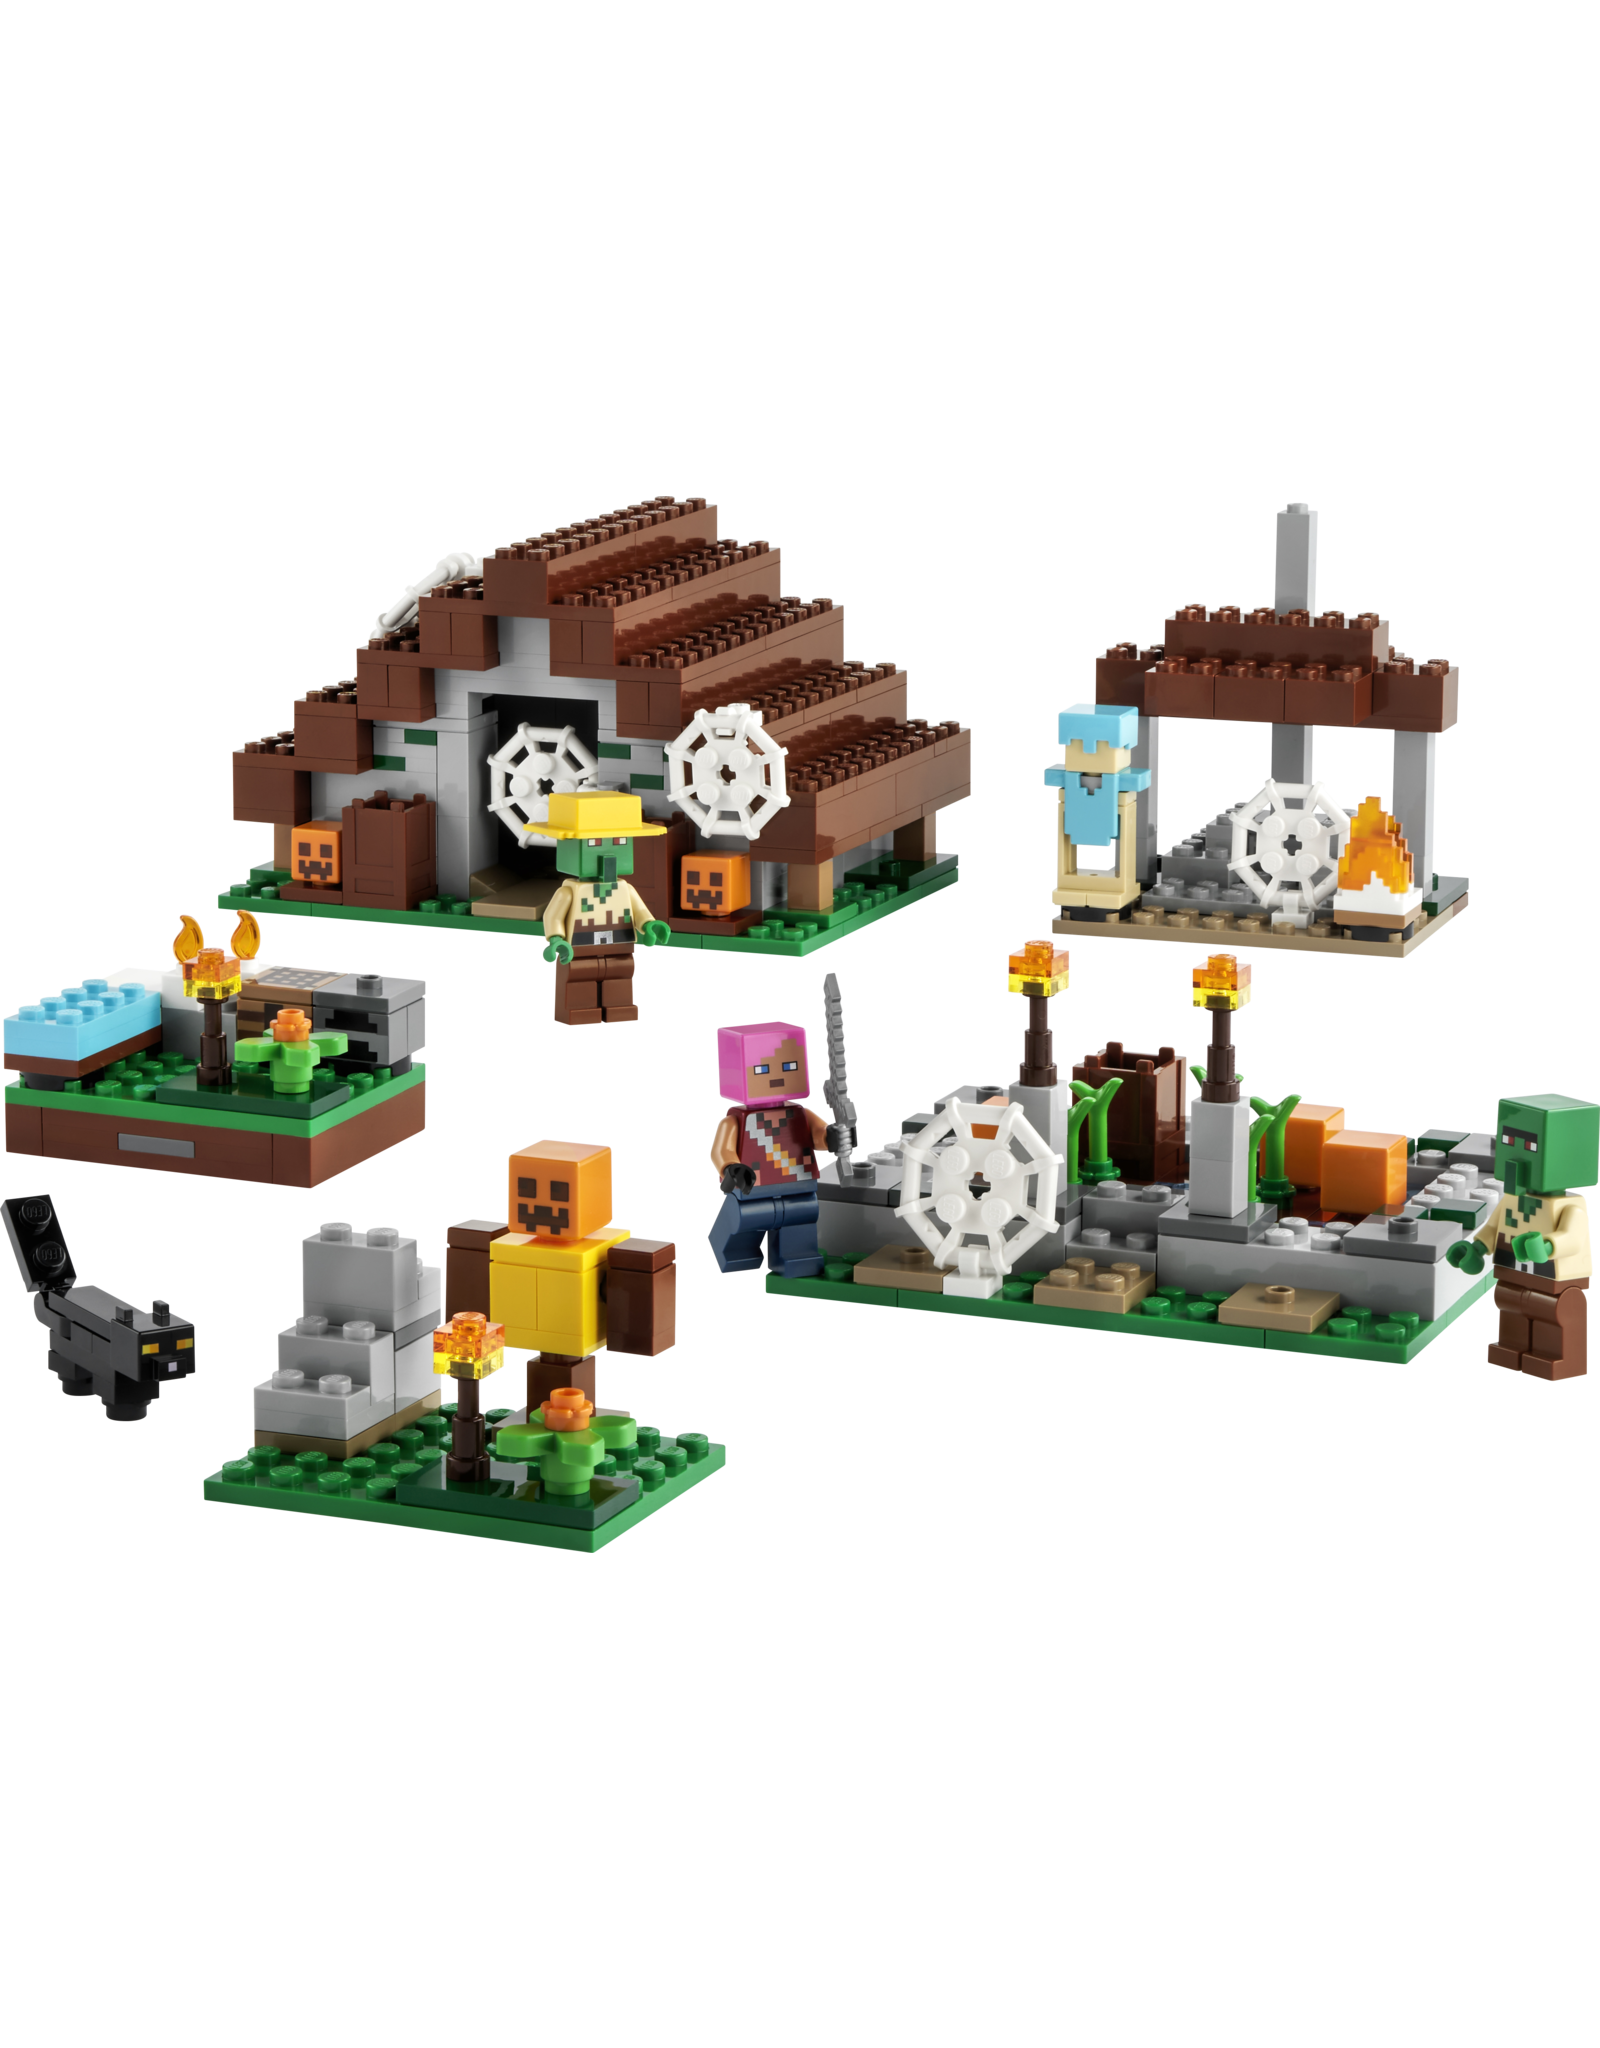 LEGO Minecraft  The Abandoned Village 21190